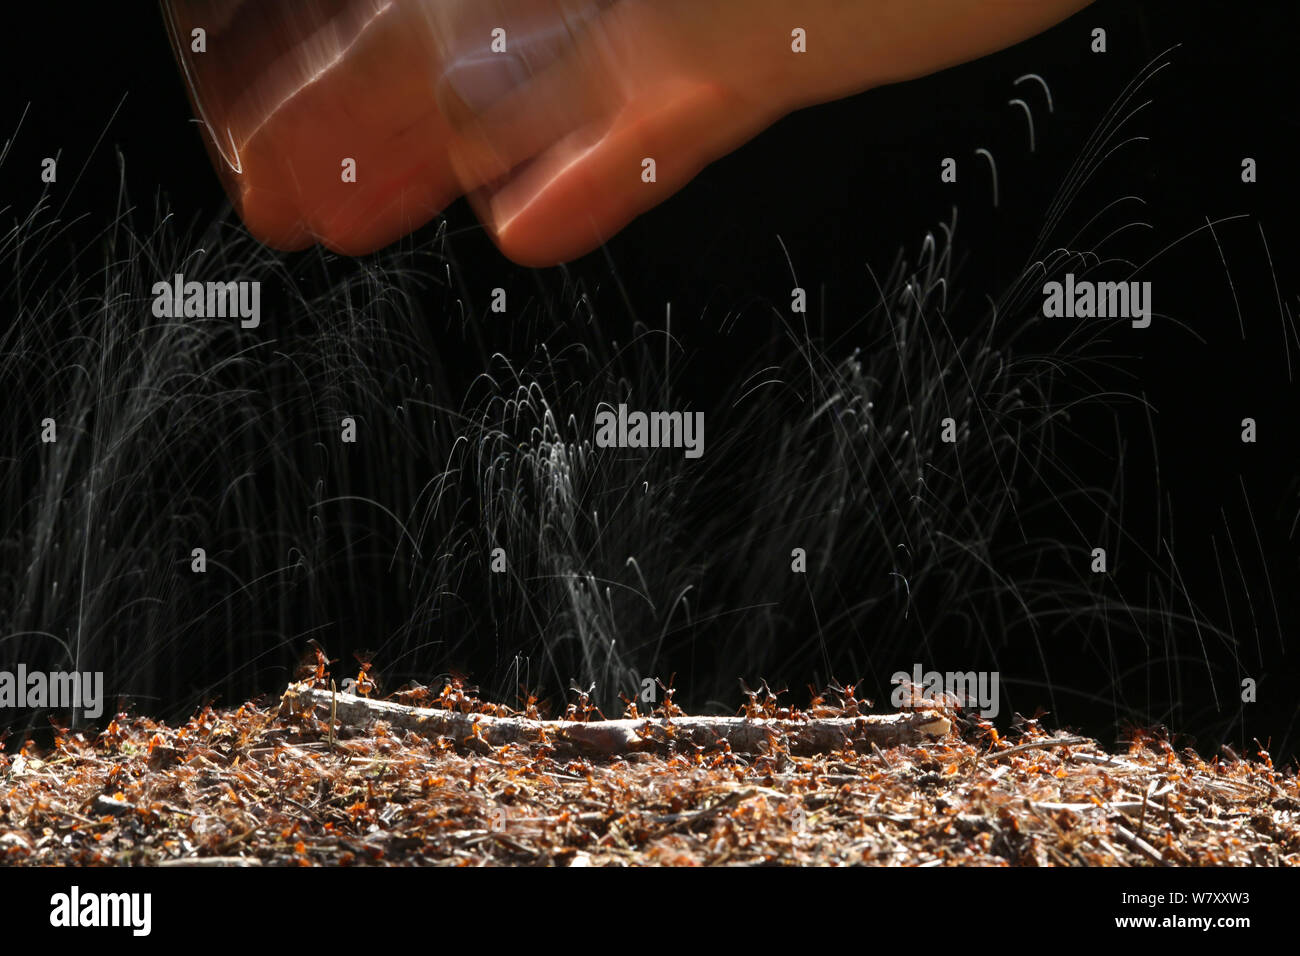 Les fourmis des bois (Formica rufa) projections d'acide formique à une main humaine, Surrey, Angleterre, juin. Banque D'Images